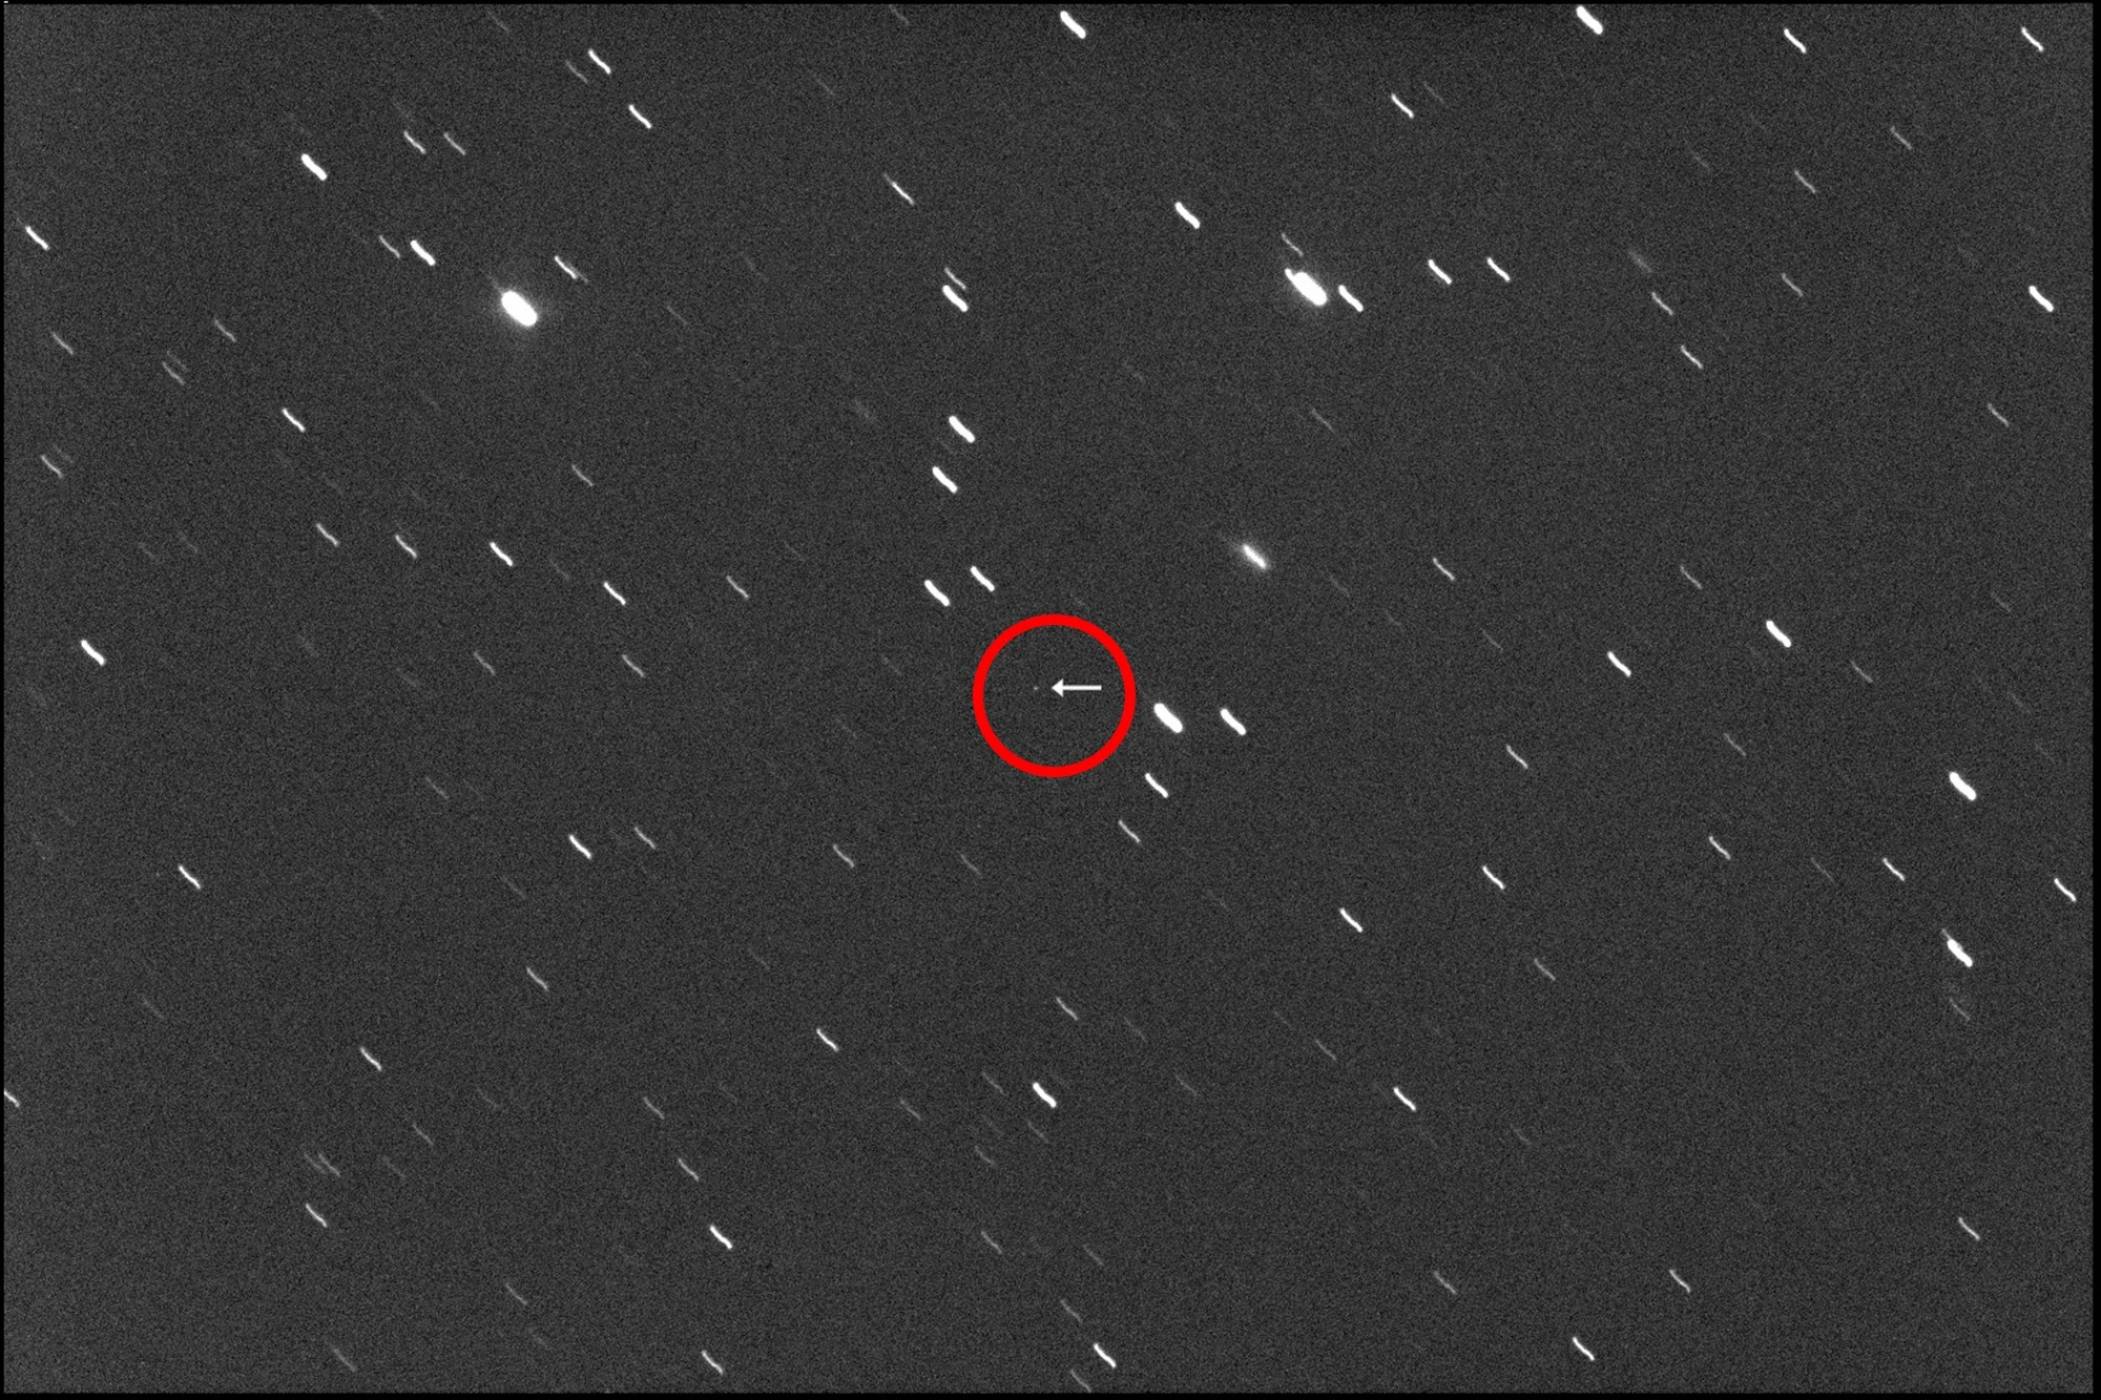 На 1 април ще се разминем с един съвсем истински и потенциално опасен астероид